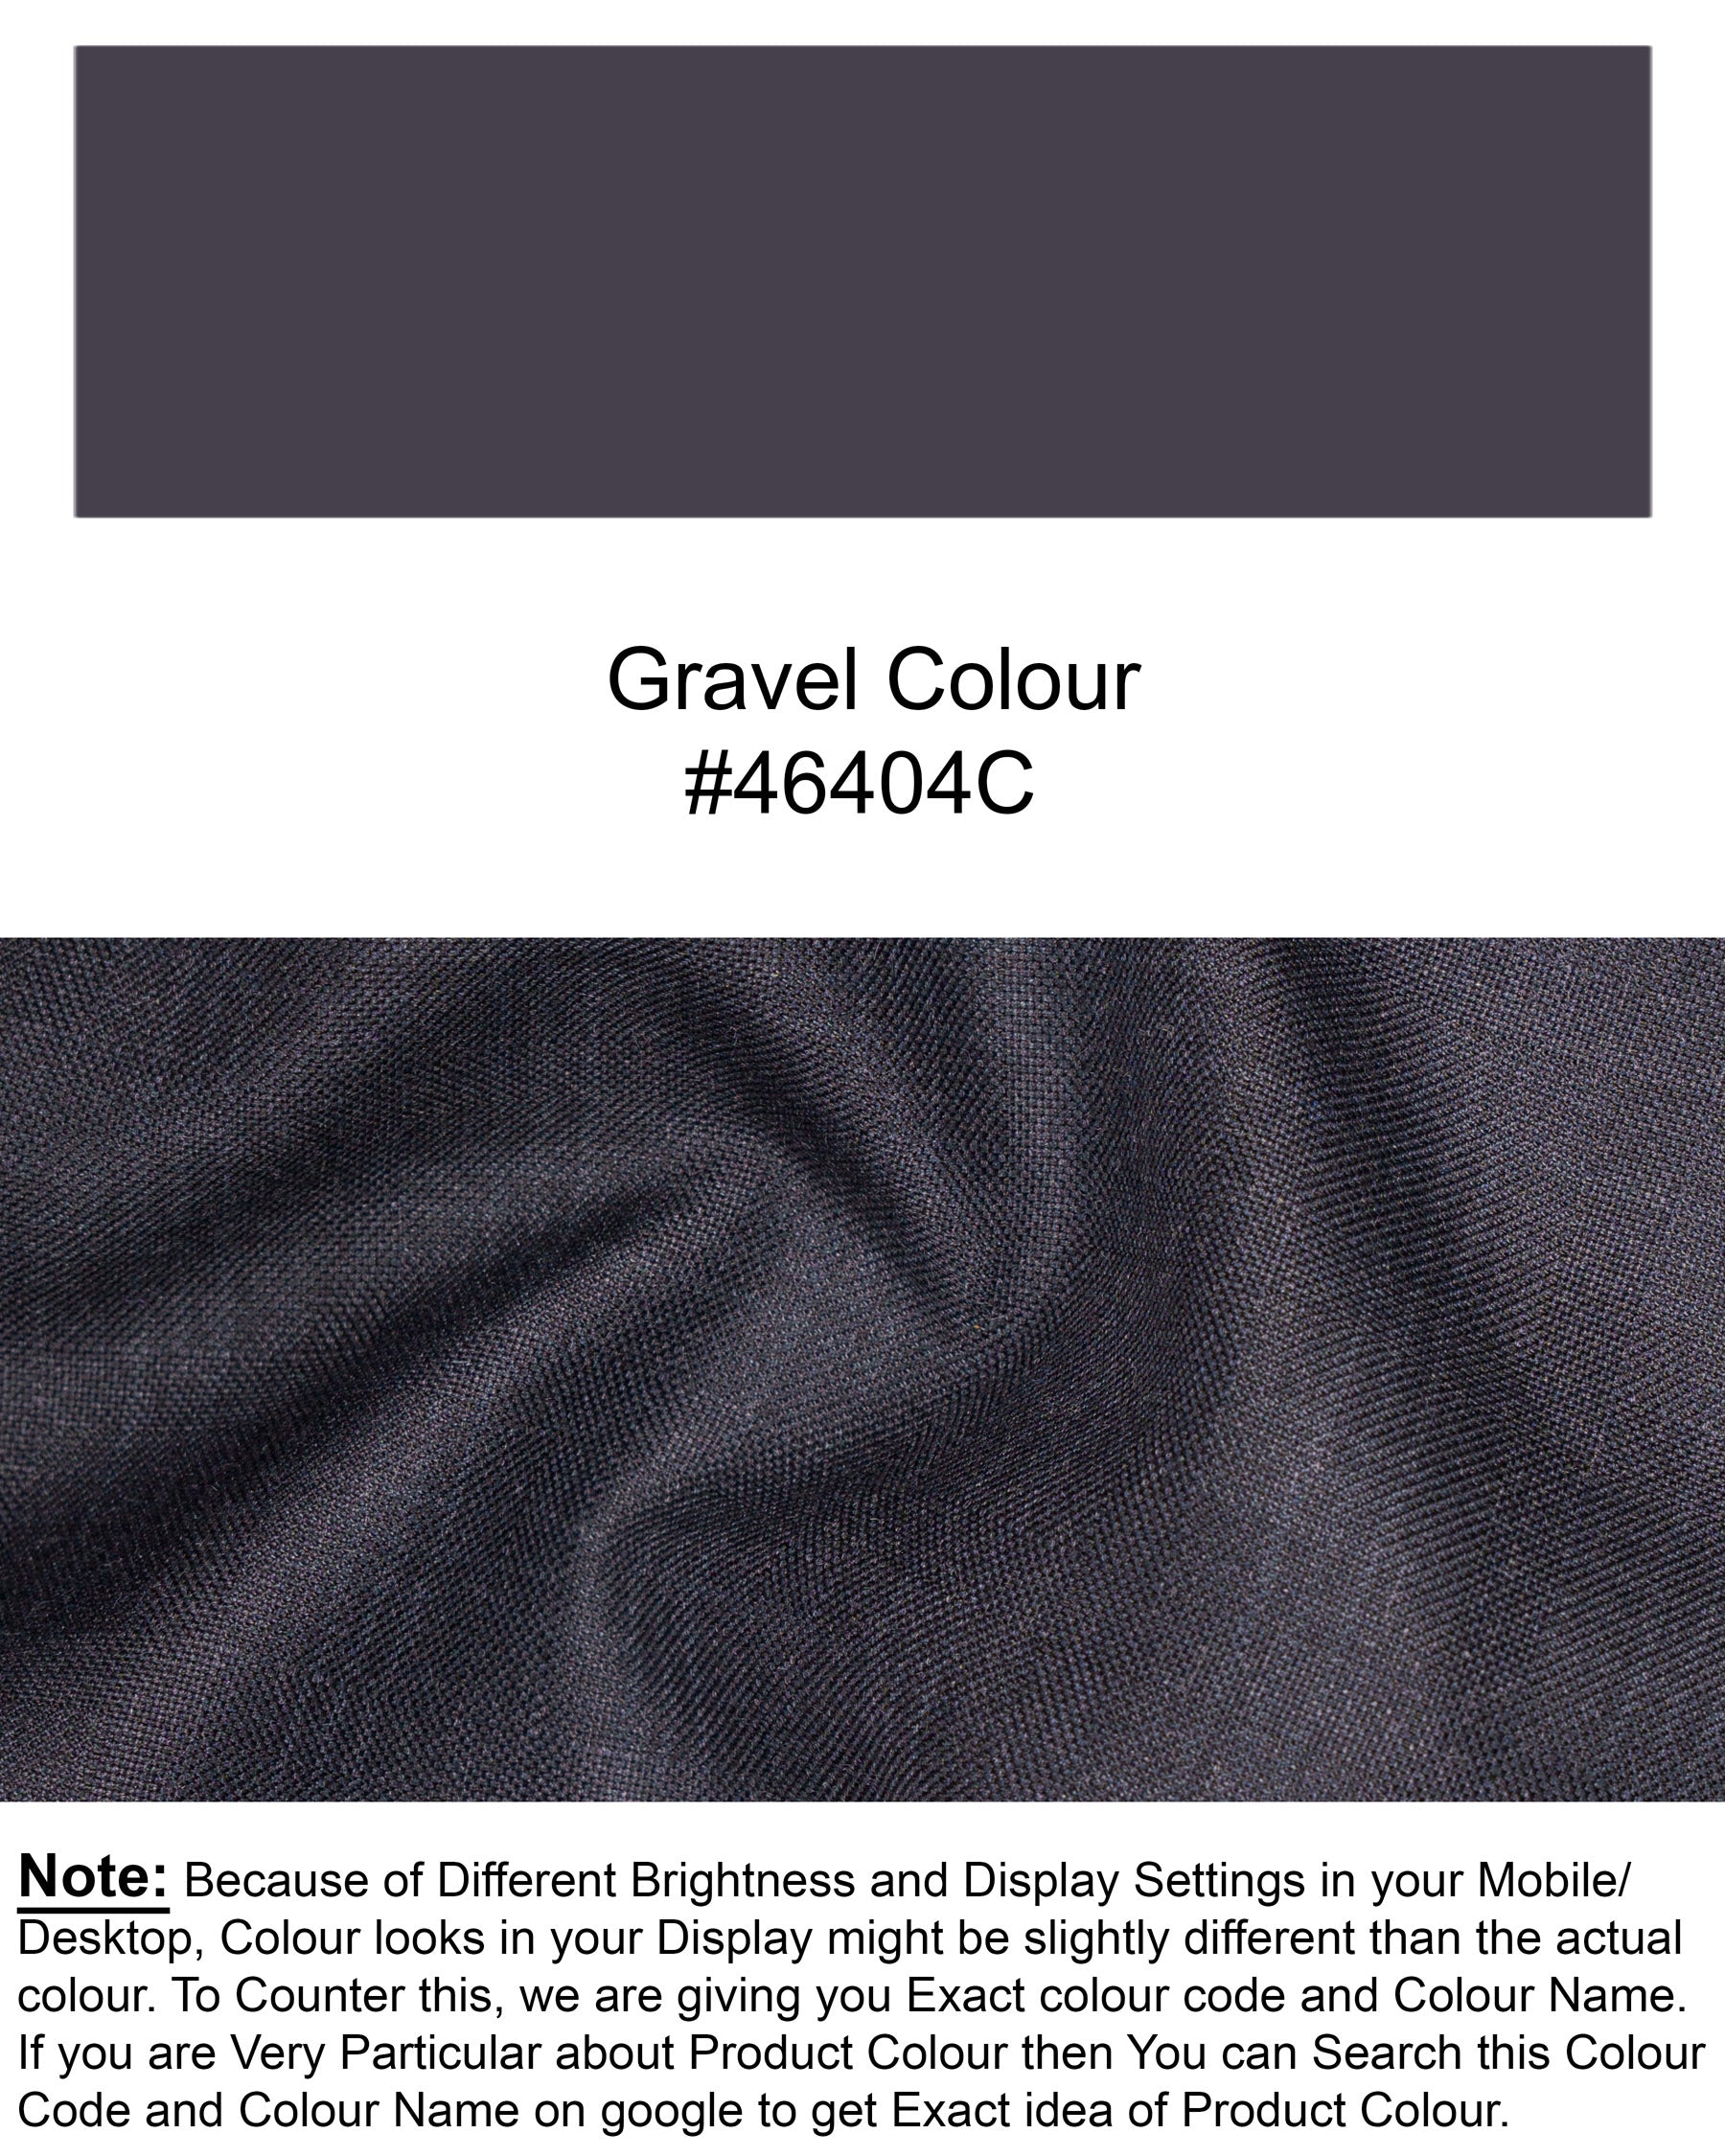 Gravel Grey Subtle Plaid Cross Buttoned Bandhgala Wool Rich Blazer BL1567-CBG2-36, BL1567-CBG2-38, BL1567-CBG2-40, BL1567-CBG2-42, BL1567-CBG2-44, BL1567-CBG2-46, BL1567-CBG2-48, BL1567-CBG2-50, BL1567-CBG2-52, BL1567-CBG2-54, BL1567-CBG2-56, BL1567-CBG2-58, BL1567-CBG2-60